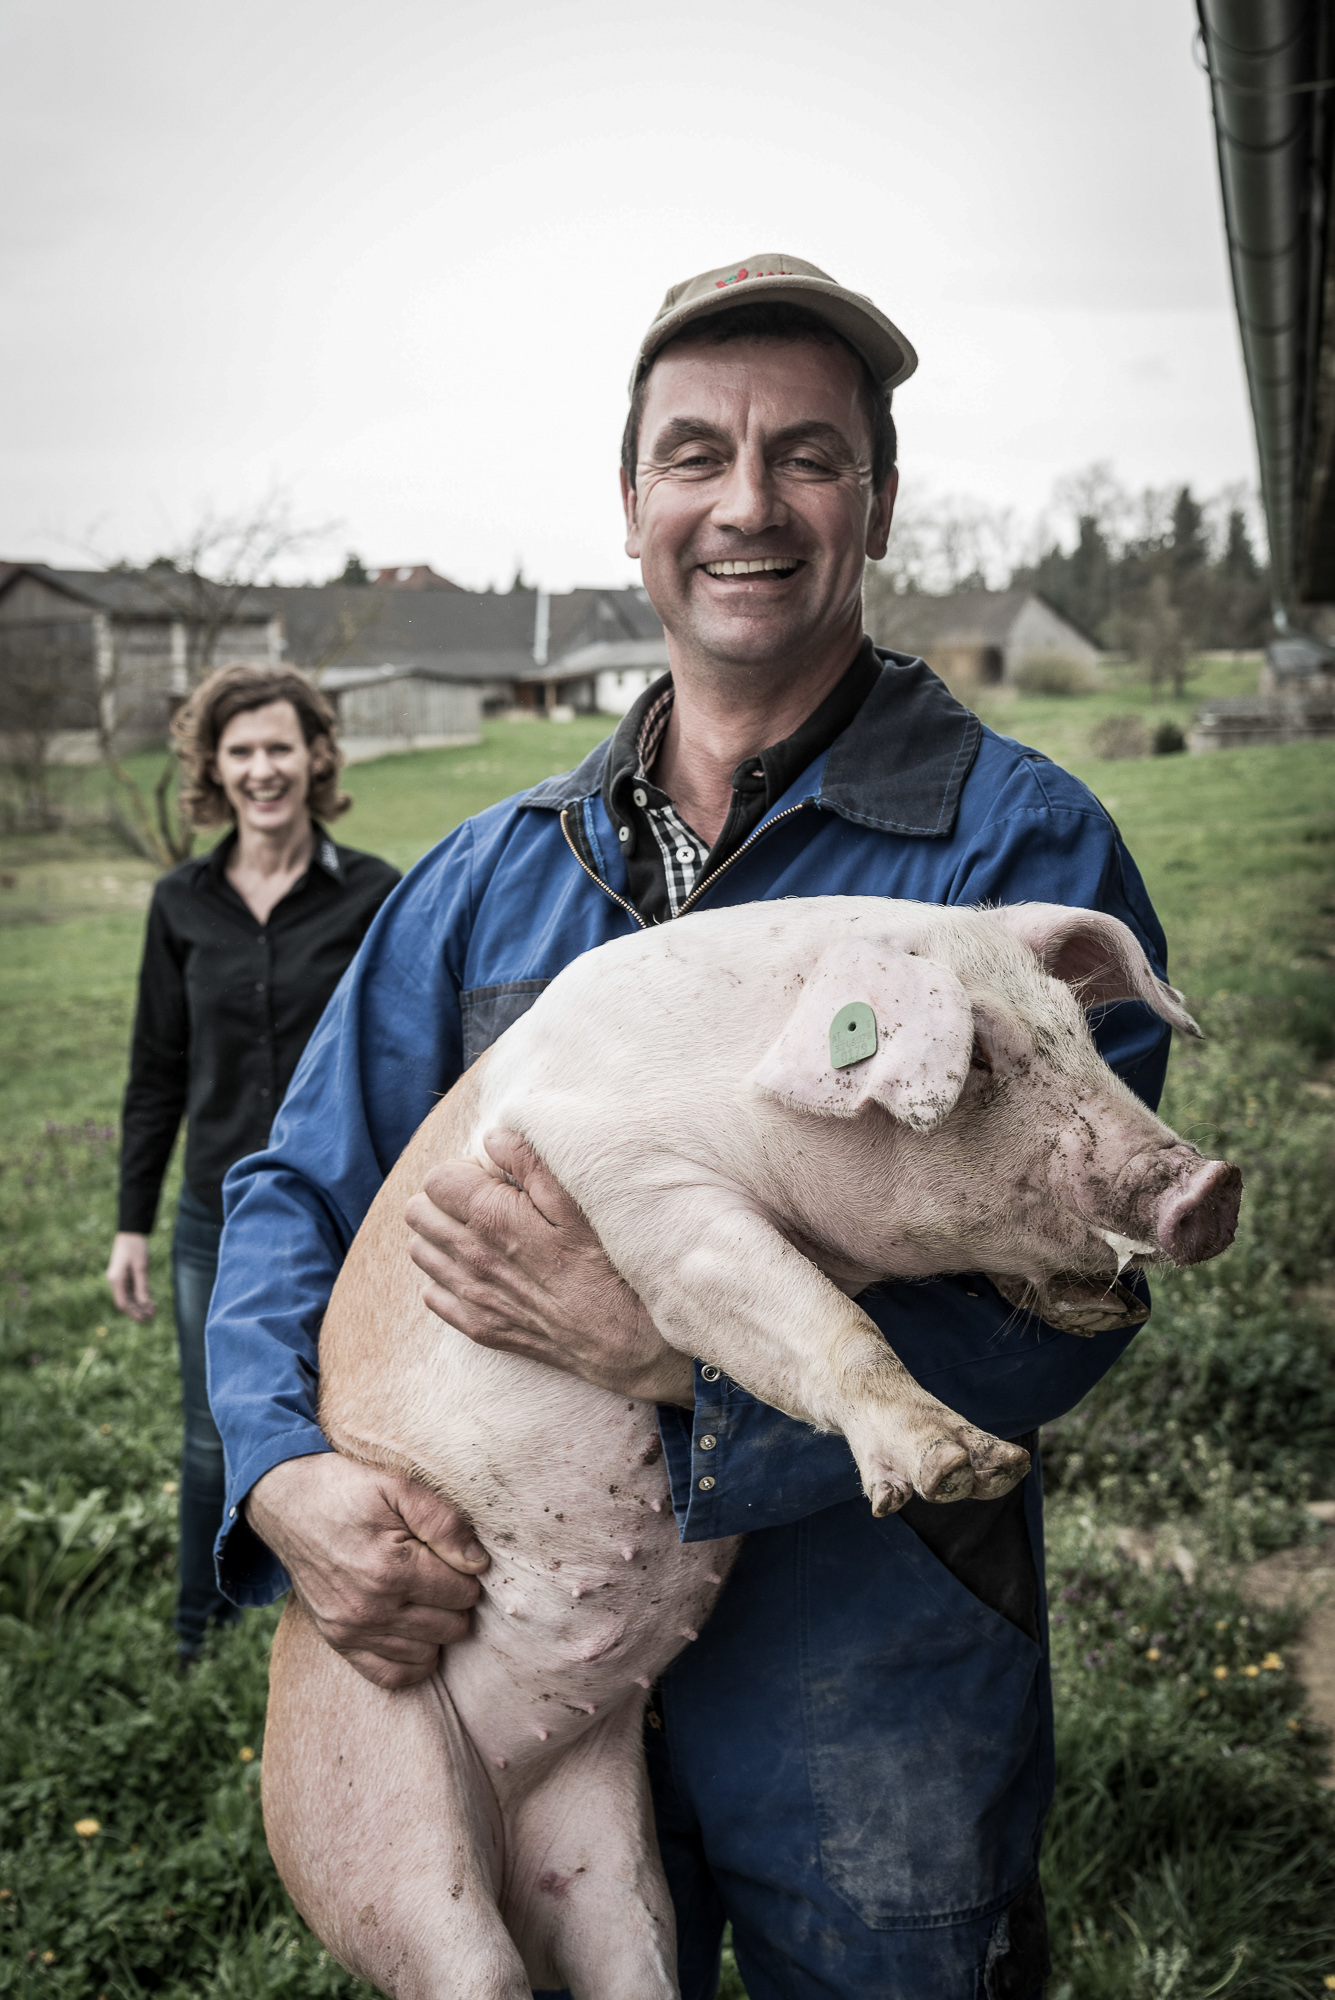 64 Erfahrungen zum emissionsarmen Tierwohlstall für Schweine